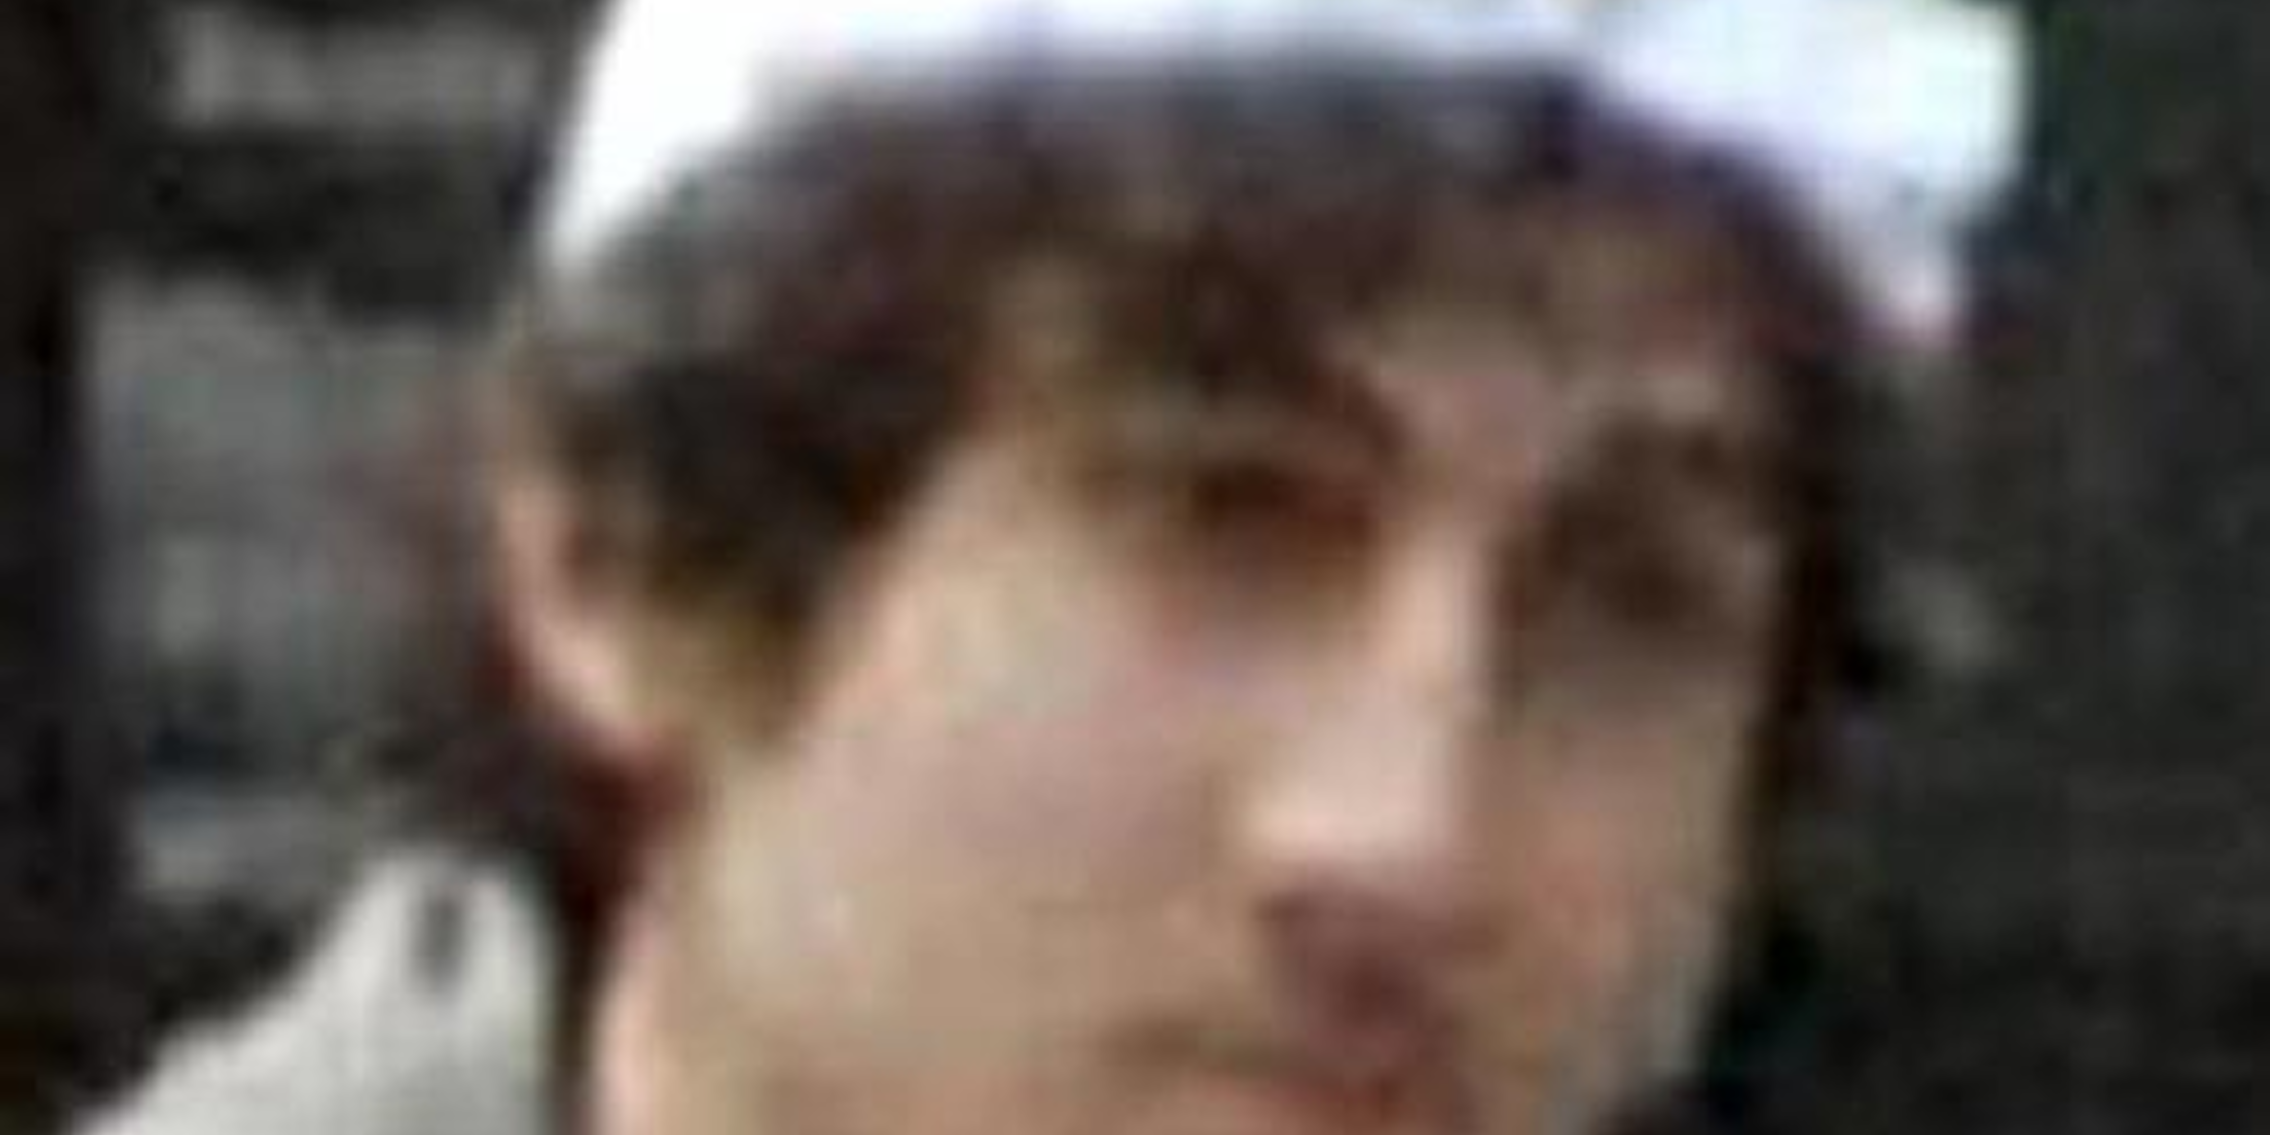 Boston bombing suspect Dzhokhar Tsarnaev taken into custody